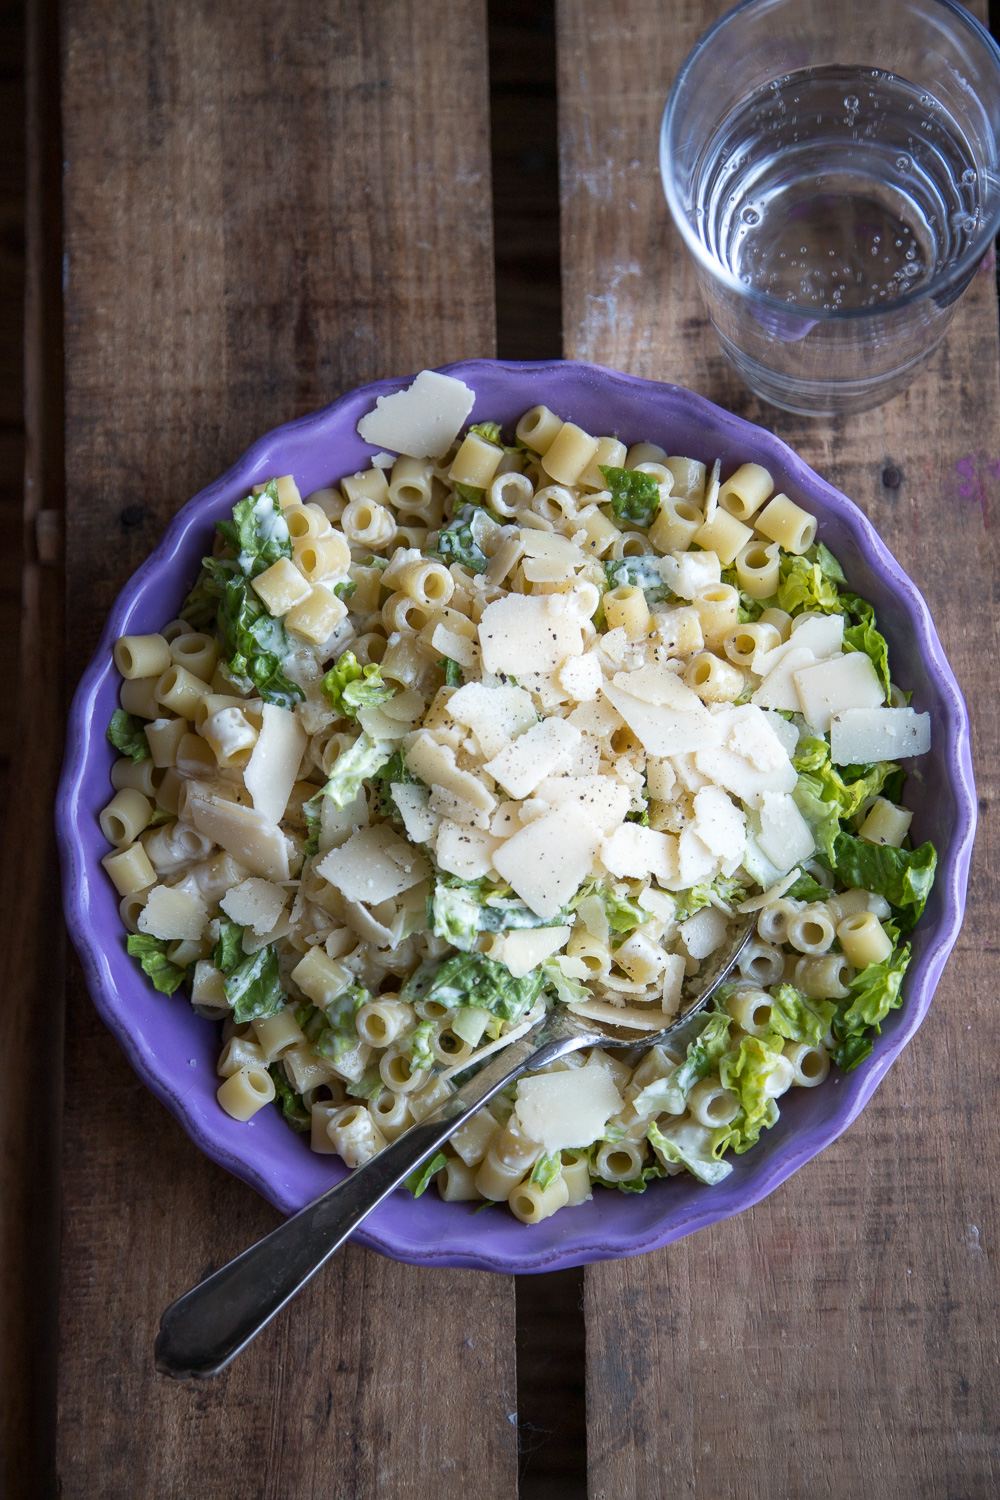 Salat geht immer! Der beliebte Caesars-Nudelsalat - Schneller Caesars Salat mit Nudeln